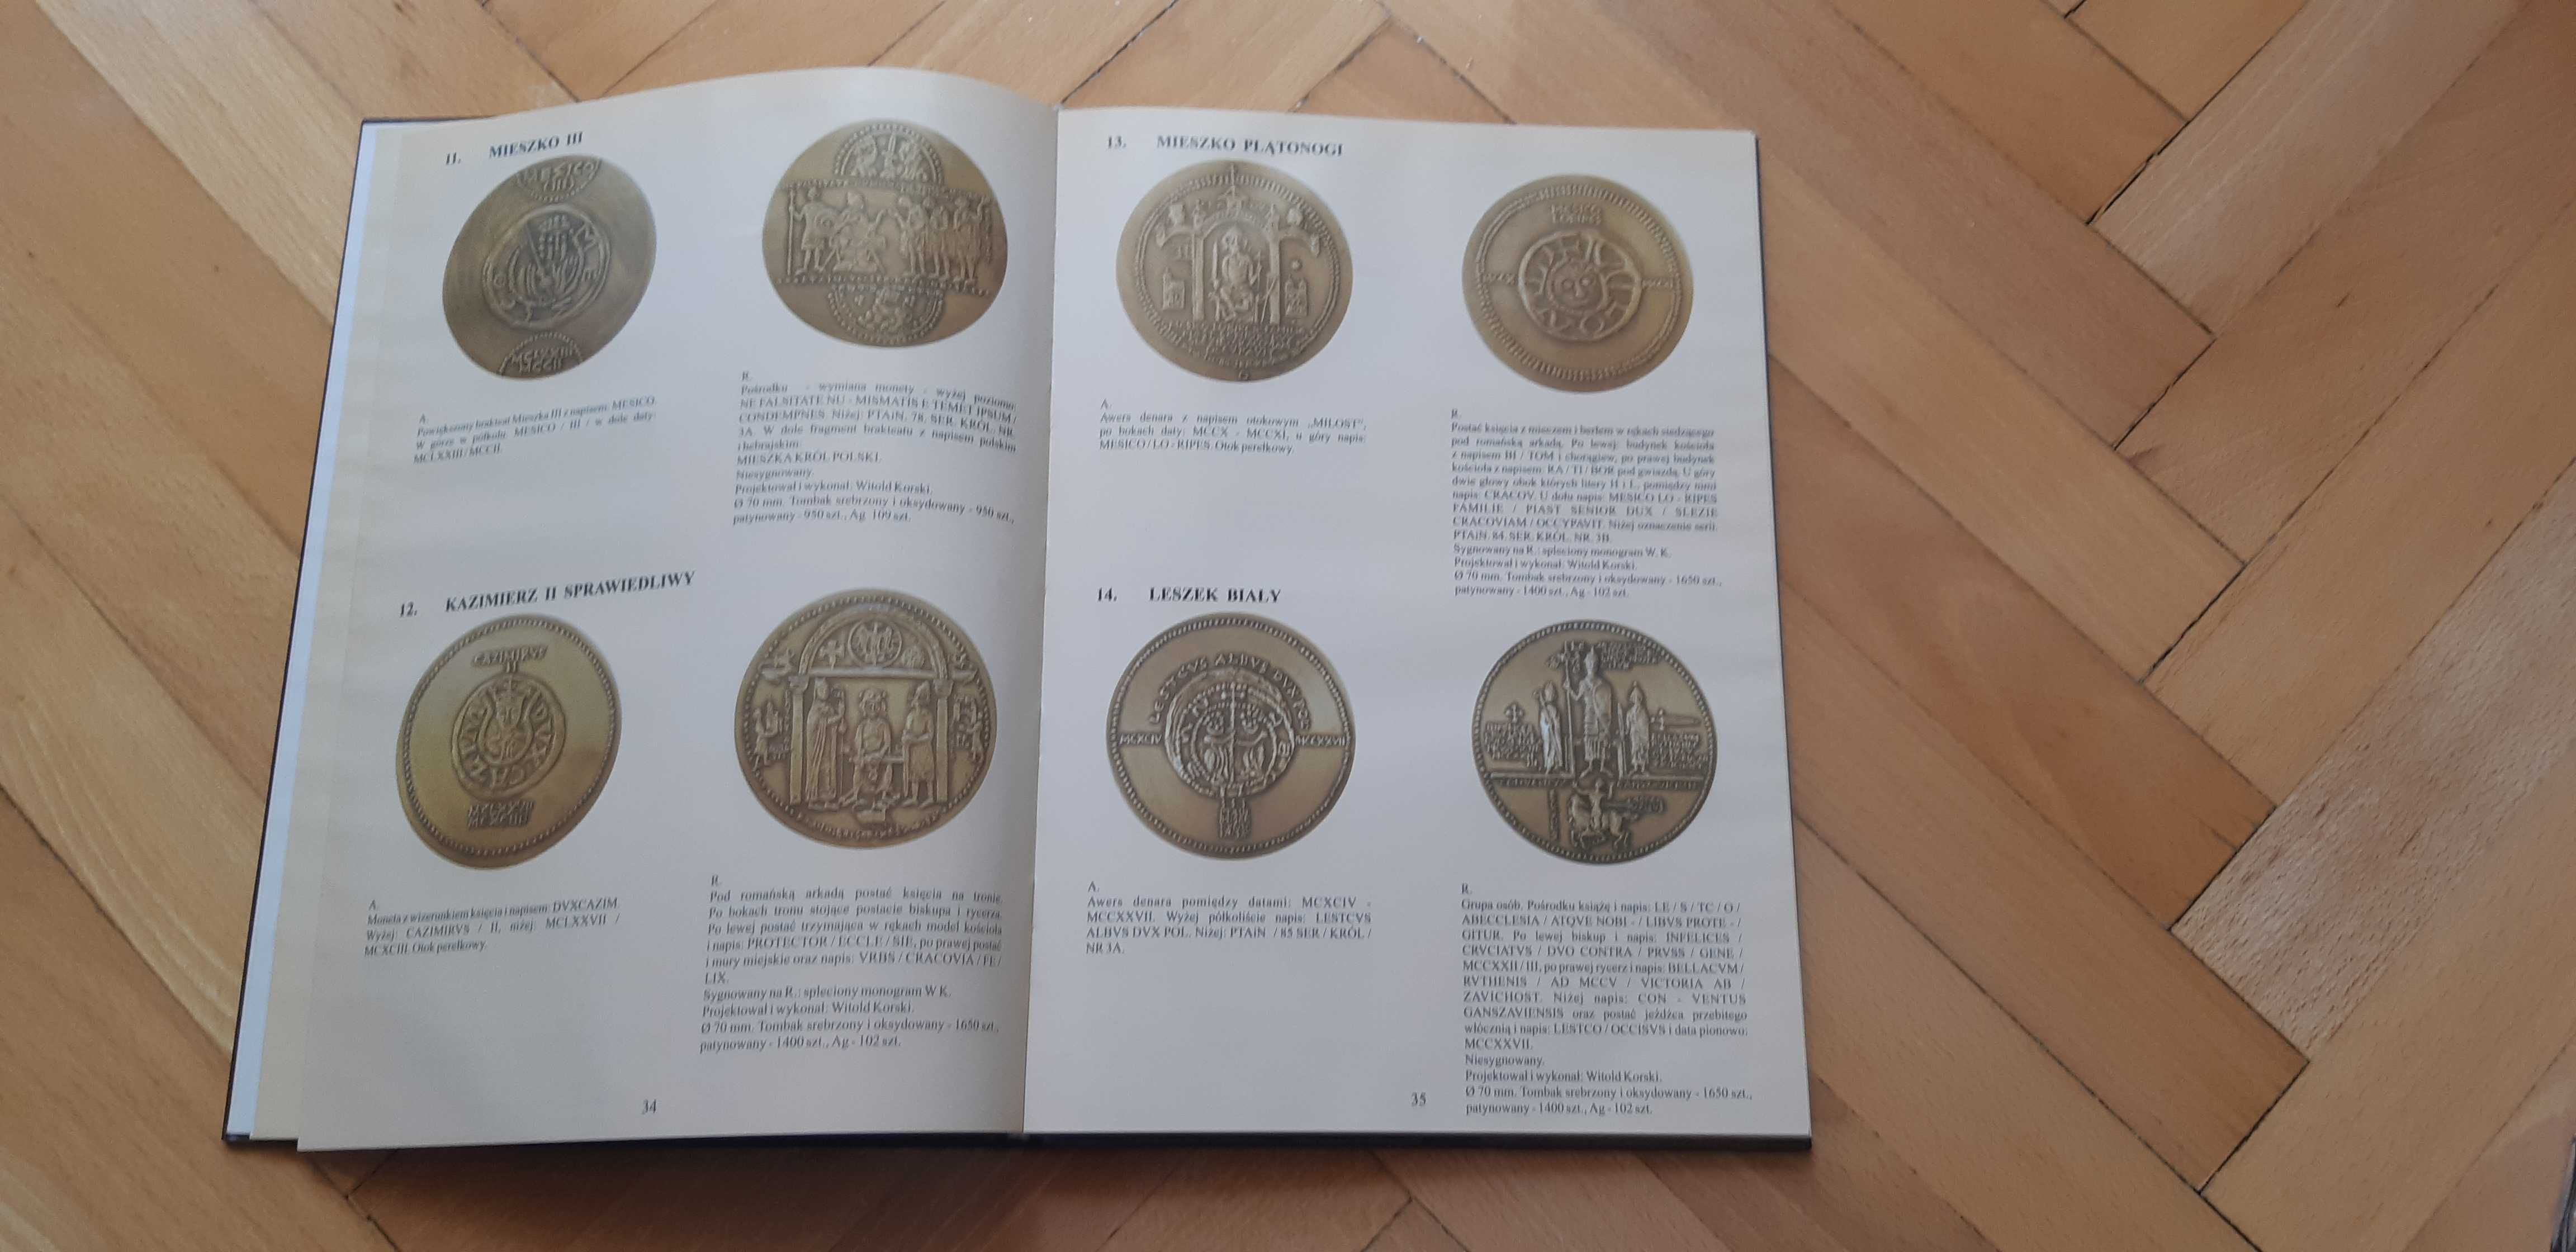 Polskie medale patriotyczne  z kolekcji Tadeusza Rolaka -album katalog